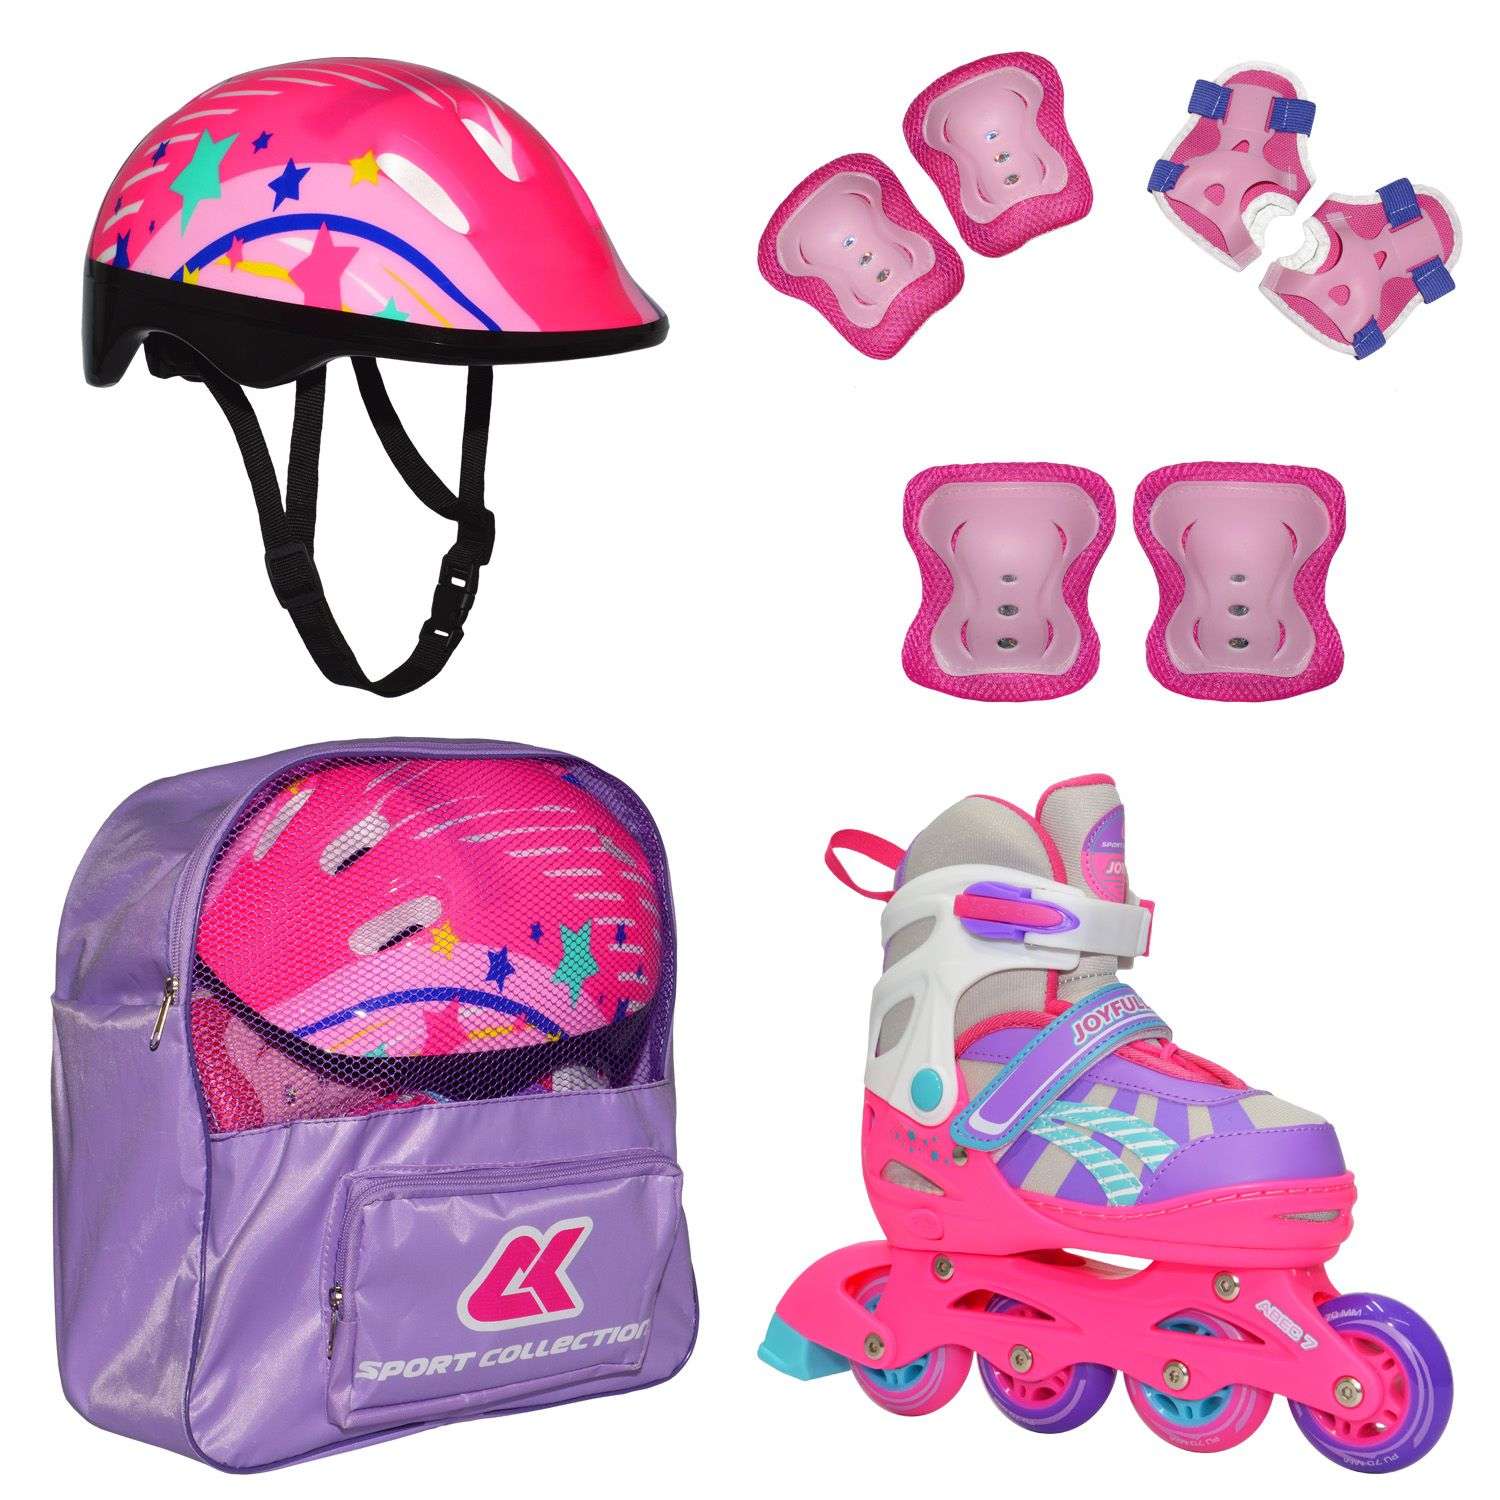 Роликовый комплект Sport Collection в сумке SET JOYFULL Pink ролики р. 29-32 Шлем 50-56 Защита S/M - фото 1